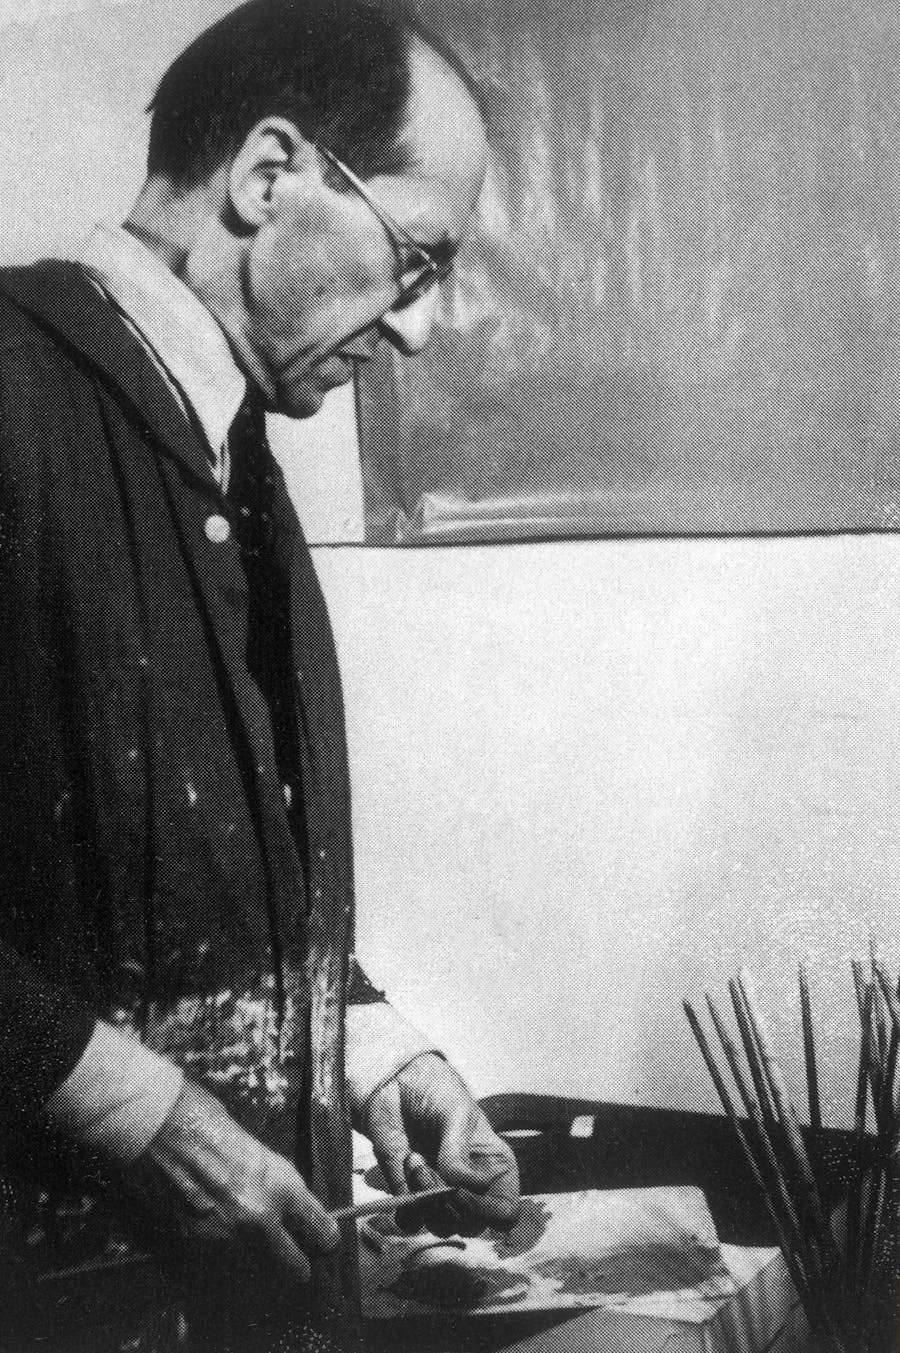 Piet Mondrian, Portrait in his studio around 1942. Photo by ullstein bild via Getty Images